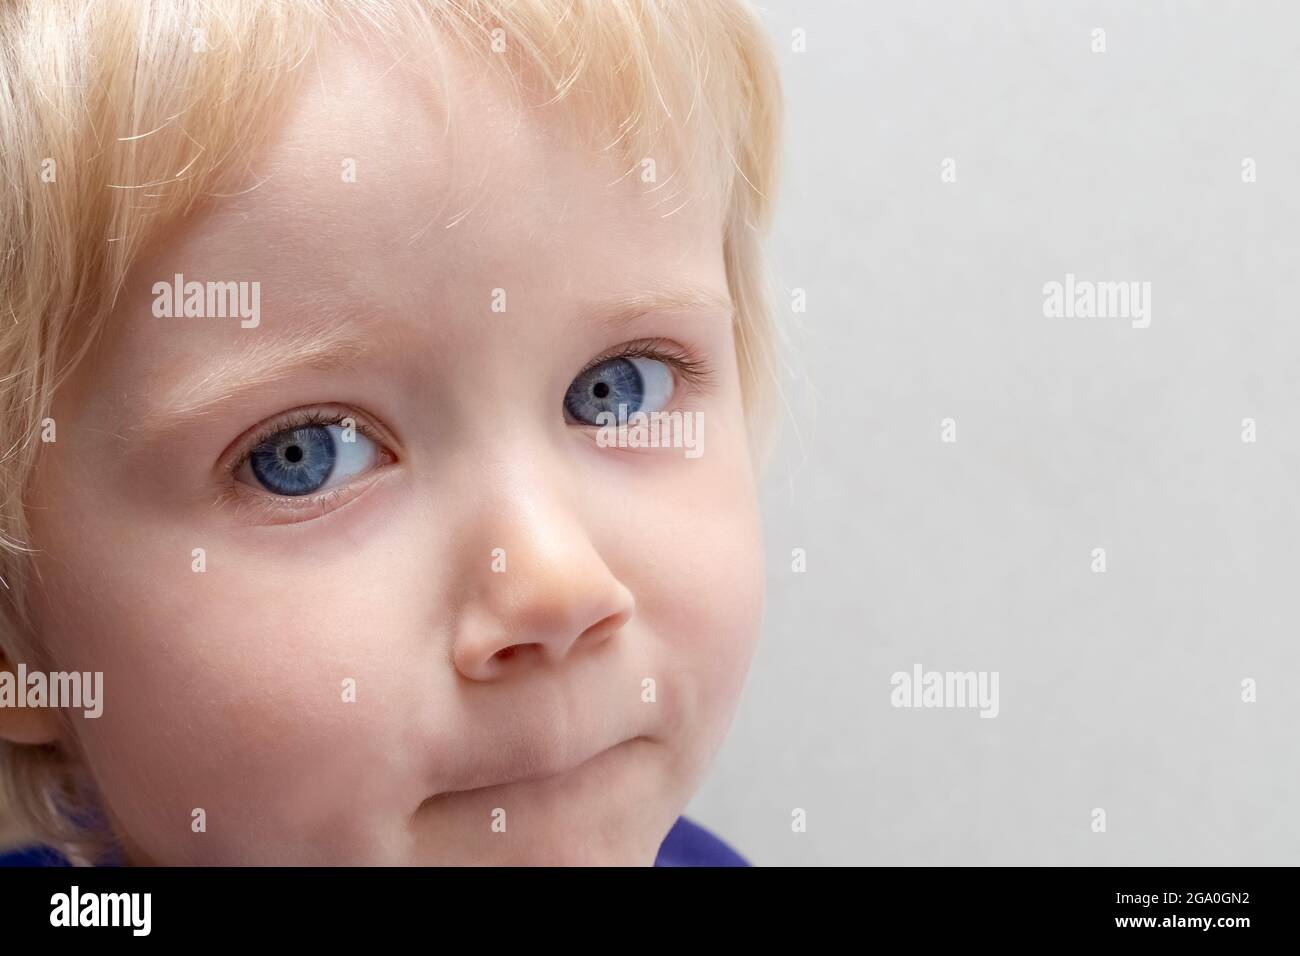 Retrato de un niño pequeño con pelo rubio, ojos azules, piel clara sobre fondo gris. Copie el espacio a la derecha. Foto de stock